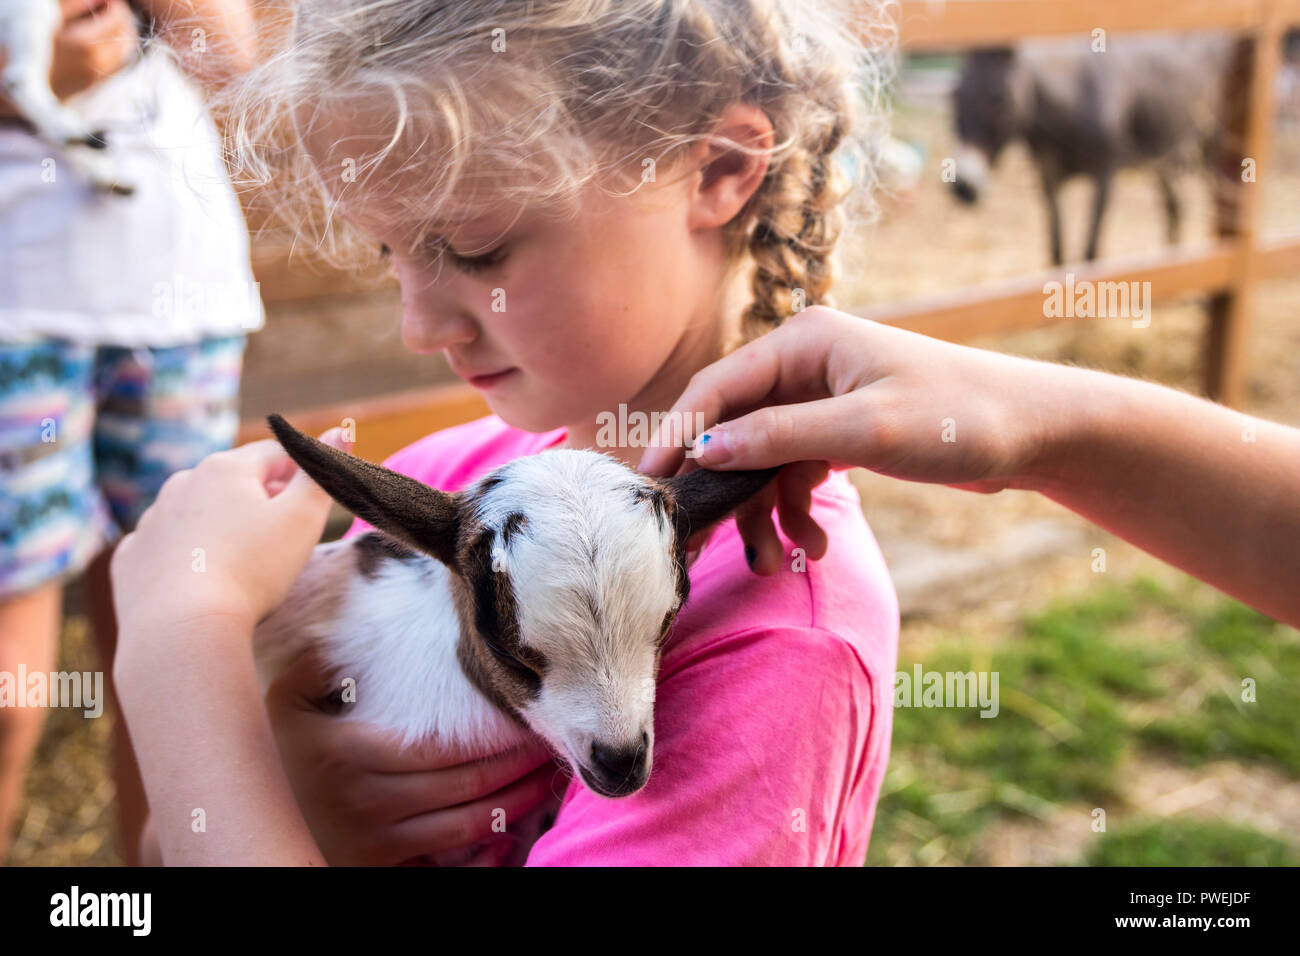 Closeup Kind hält ein Baby Ziege, braun weiß Neugeborene, zarte Konzept, Natur, Tiere, Tier, kleine Dinge, Glück freundlichkeit Liebe Stockfoto